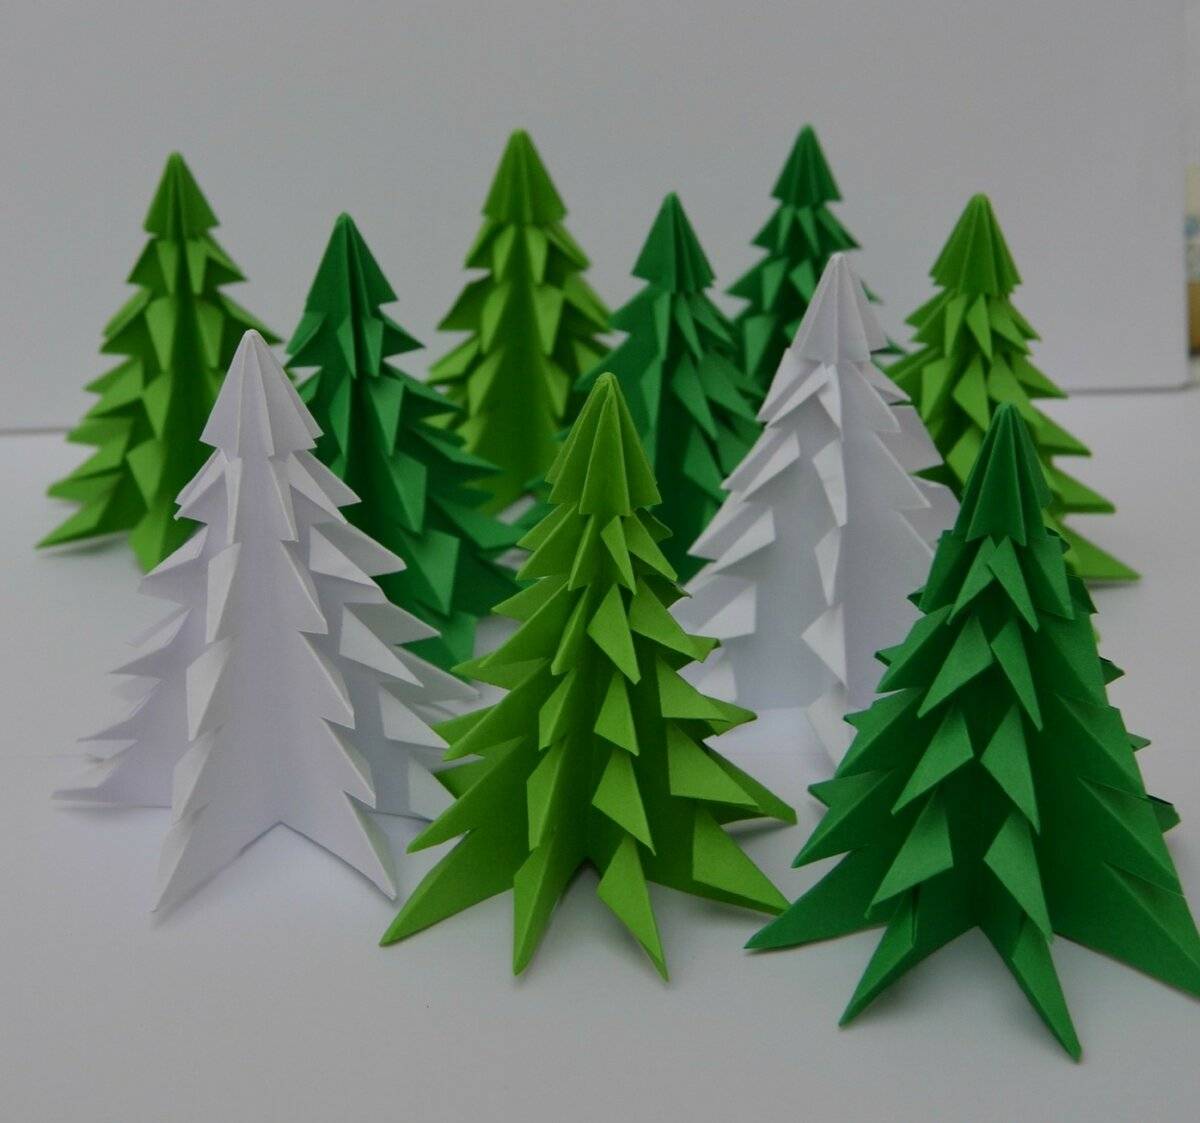 Объемная елка своими руками из бумаги (картона): схемы и шаблоны — топ, топ, сапожок